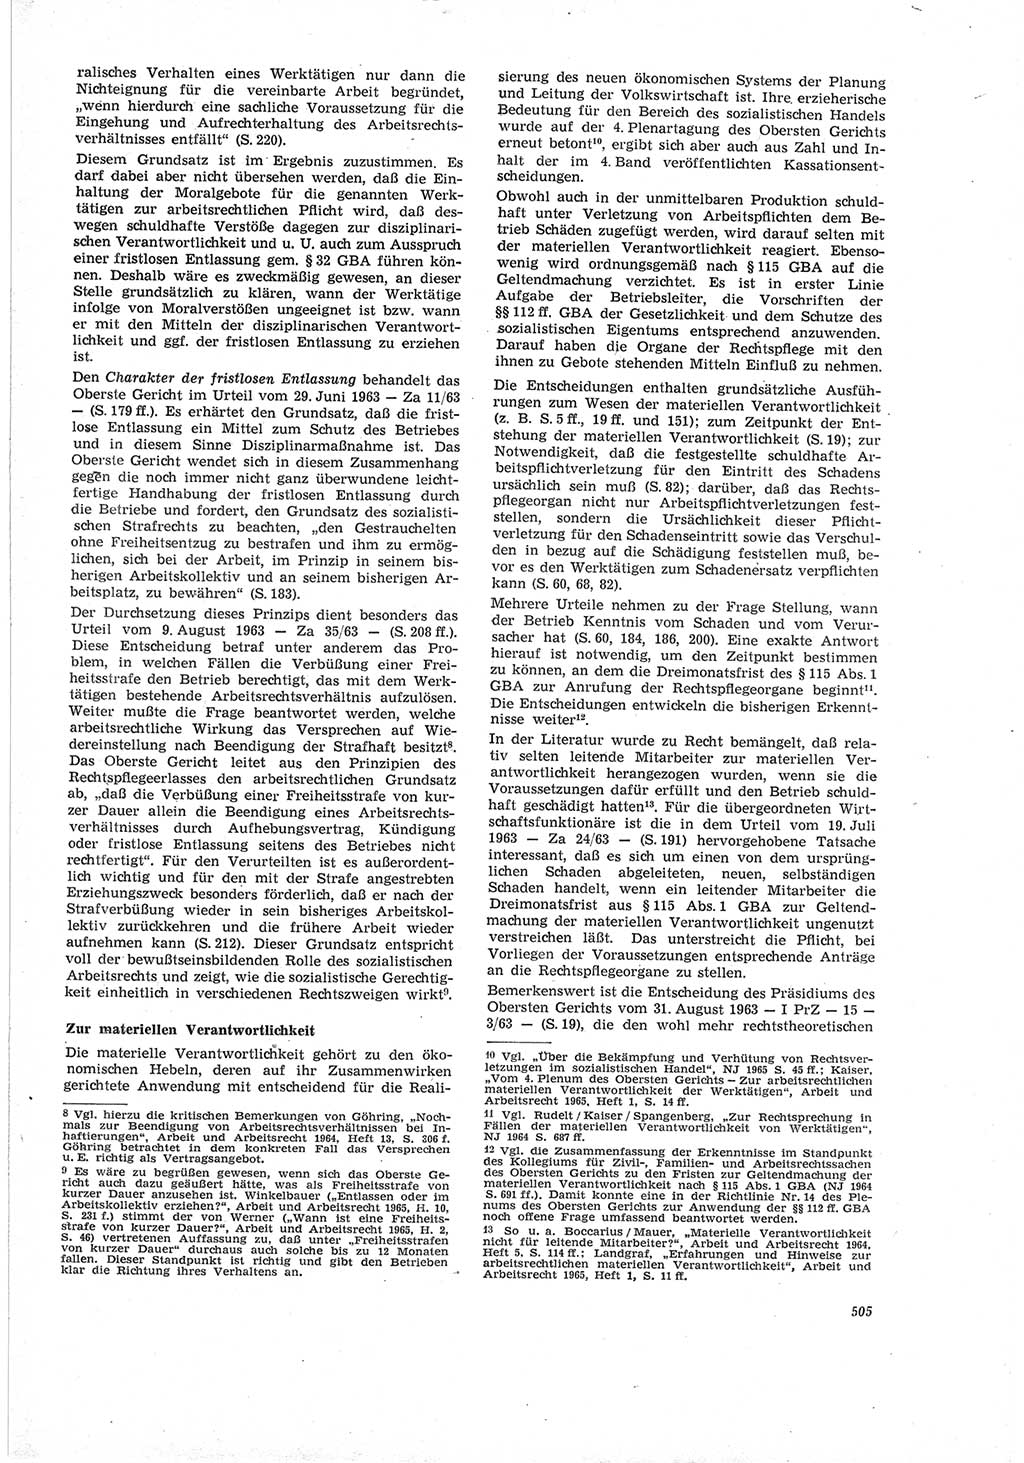 Neue Justiz (NJ), Zeitschrift für Recht und Rechtswissenschaft [Deutsche Demokratische Republik (DDR)], 19. Jahrgang 1965, Seite 505 (NJ DDR 1965, S. 505)